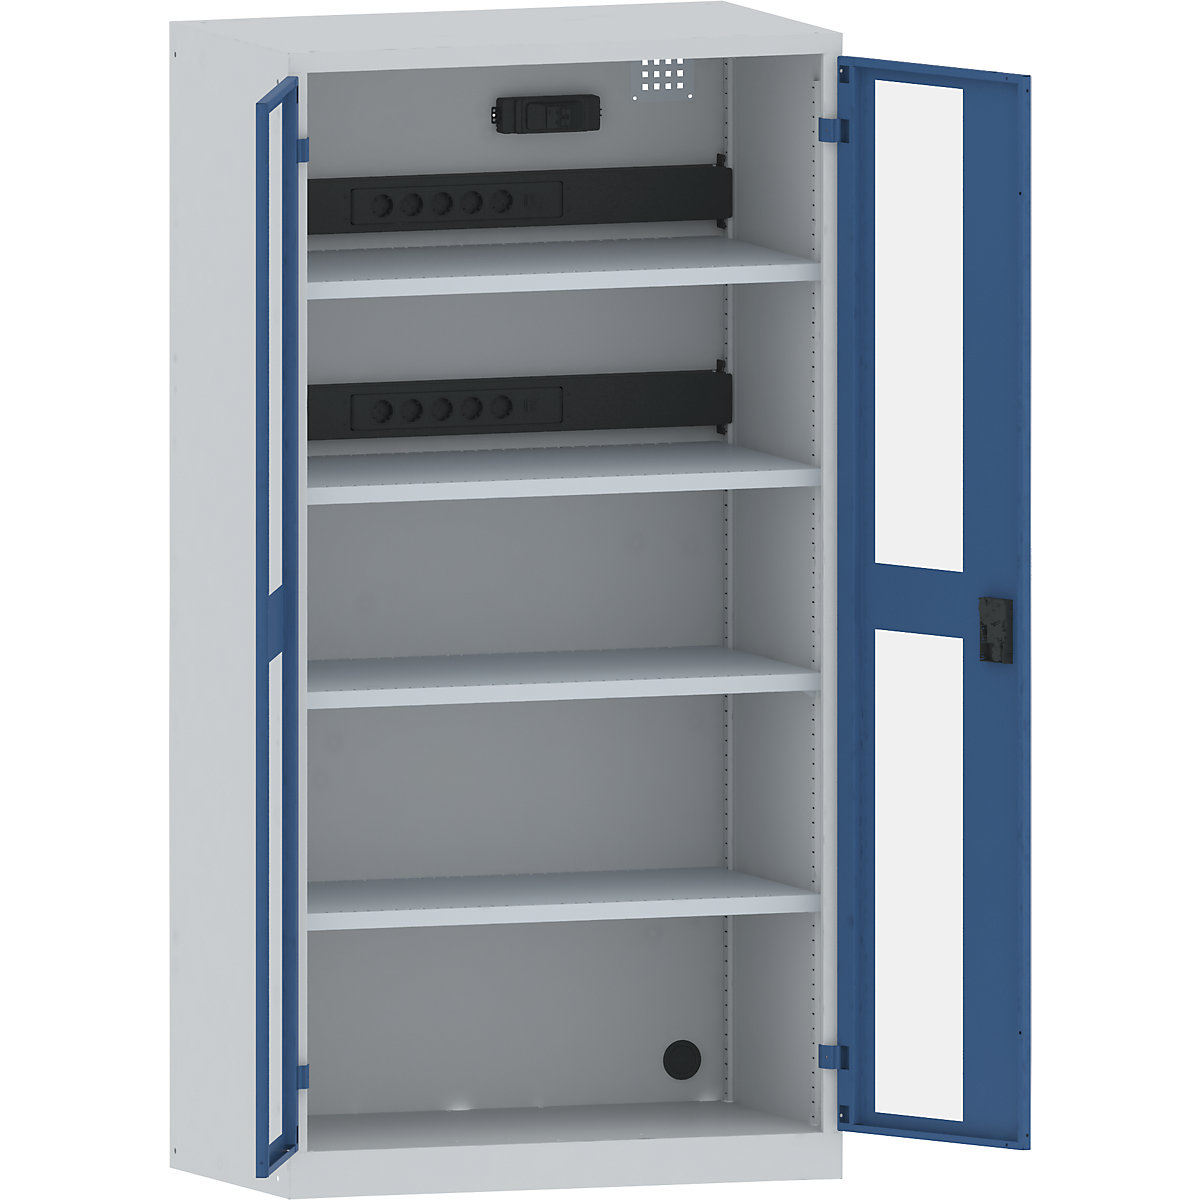 Omara za polnjenje akumulatorjev – LISTA, 4 police, vrata s šipo, 2 letvi za napeljavo na zadnji strani, s stikalom FI/LS, sive / modre barve-17